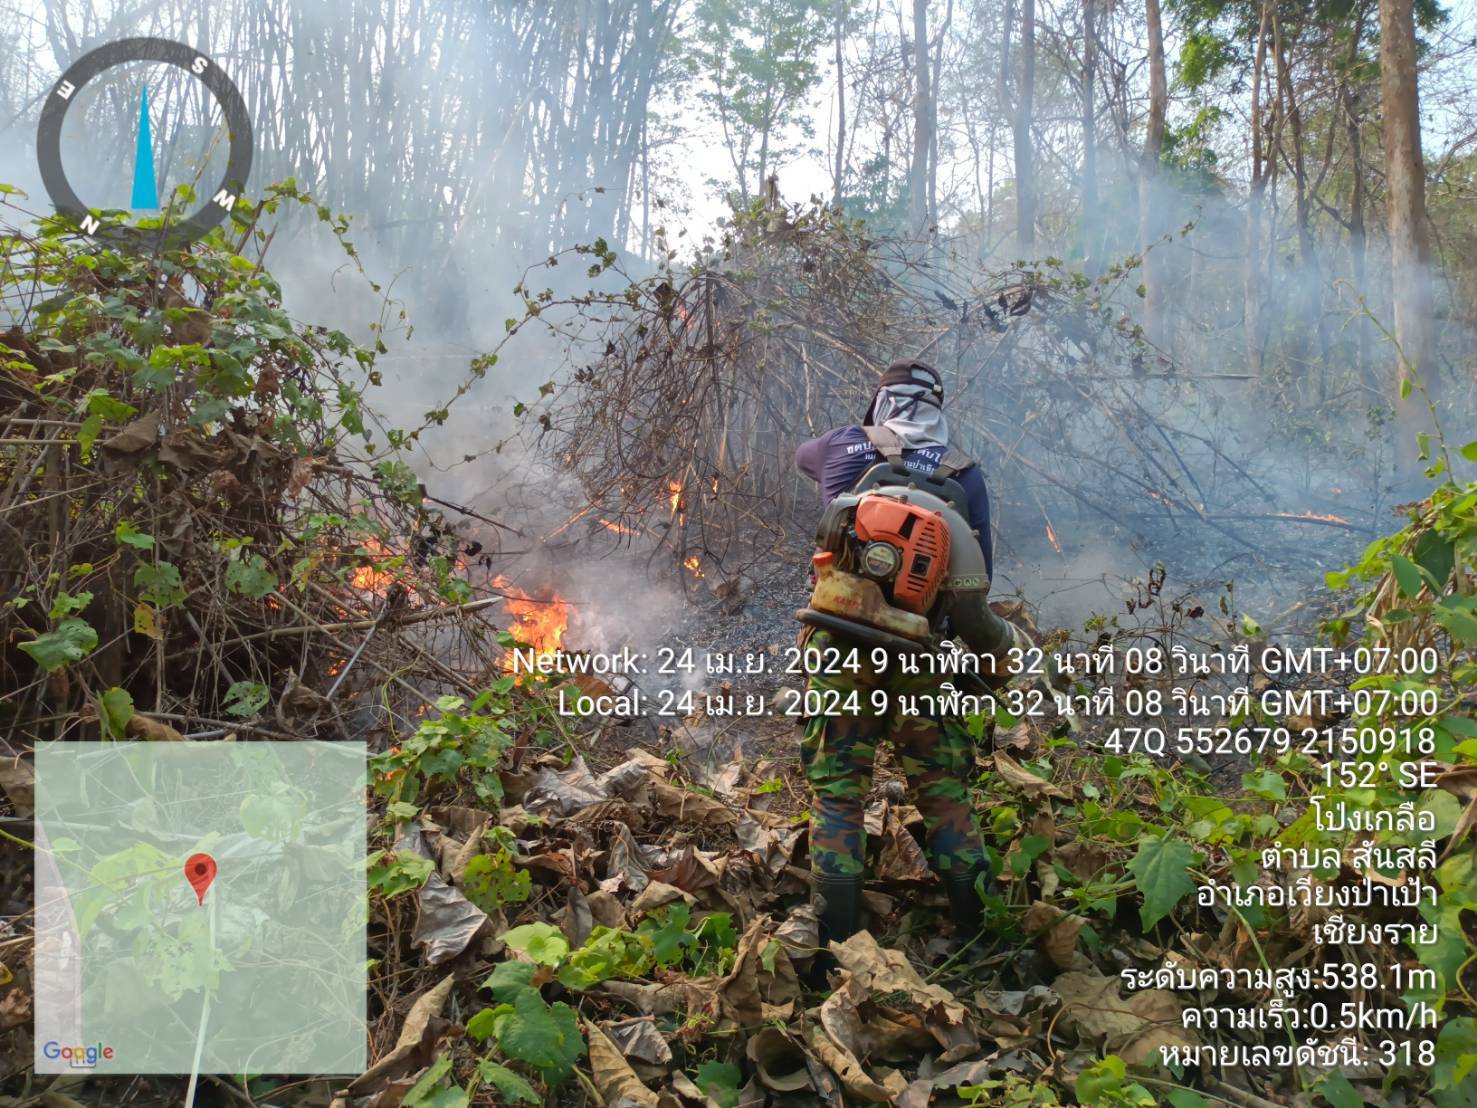 นายอำเภอเวียงป่าเป้า ขับเคลื่อนแนวทางการป้องกันและลดปัญหาไฟป่าหมอกควันและฝุ่นละอองขนาดเล็ก PM 2.5 ในพื้นที่